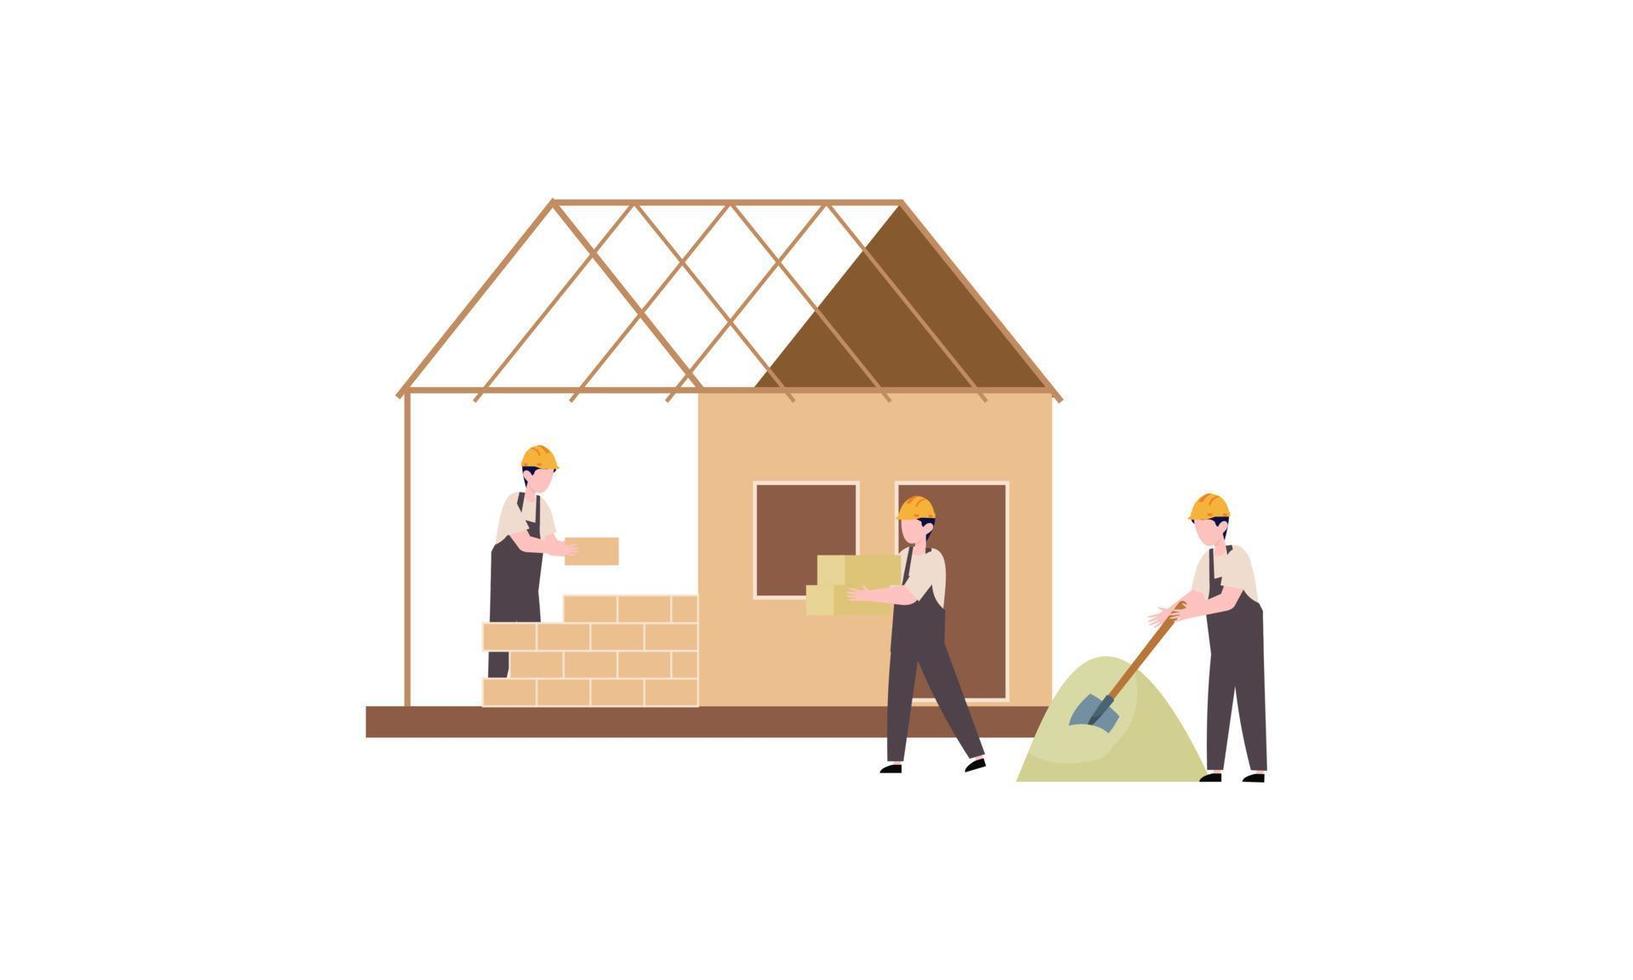 huizen bouw werkwijze. team van Bouwers bouwen hout huis illustratie vector